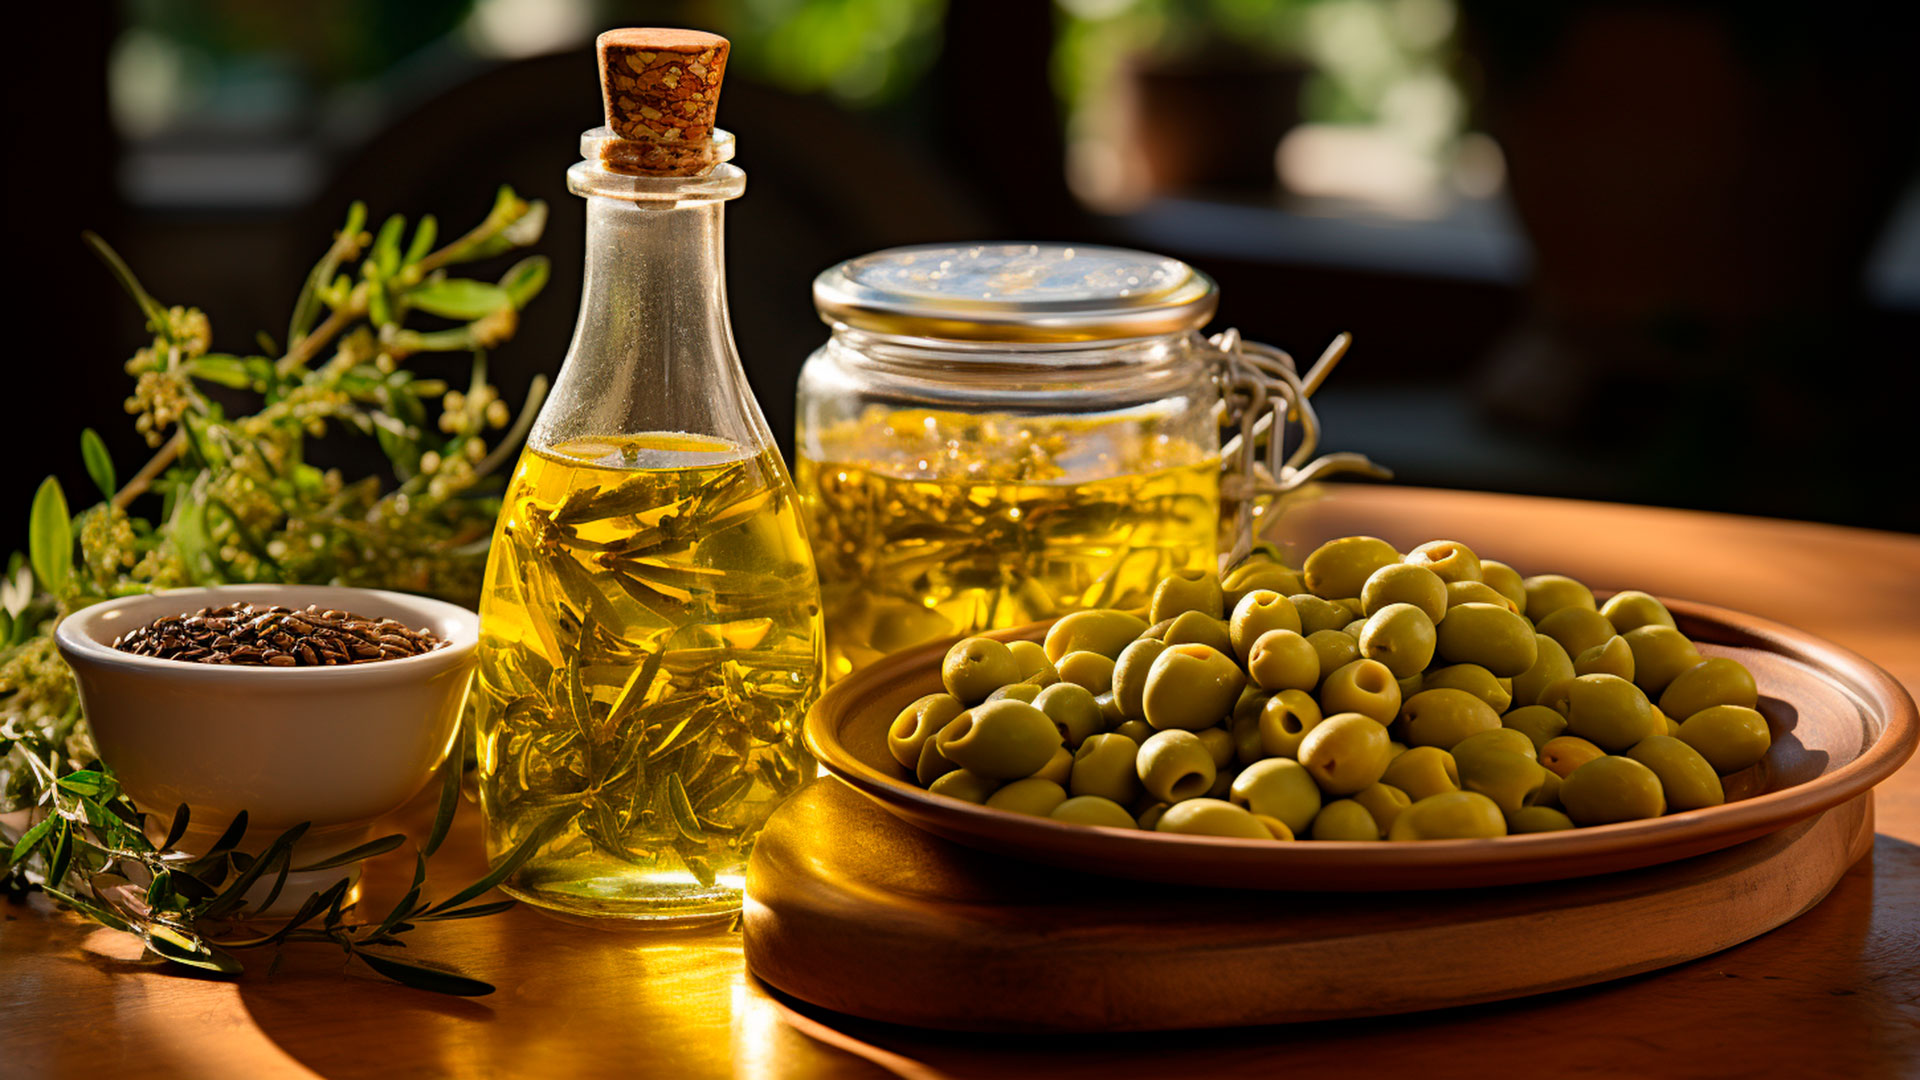 El aceite de oliva en spray, el aliado perfecto para adelgazar